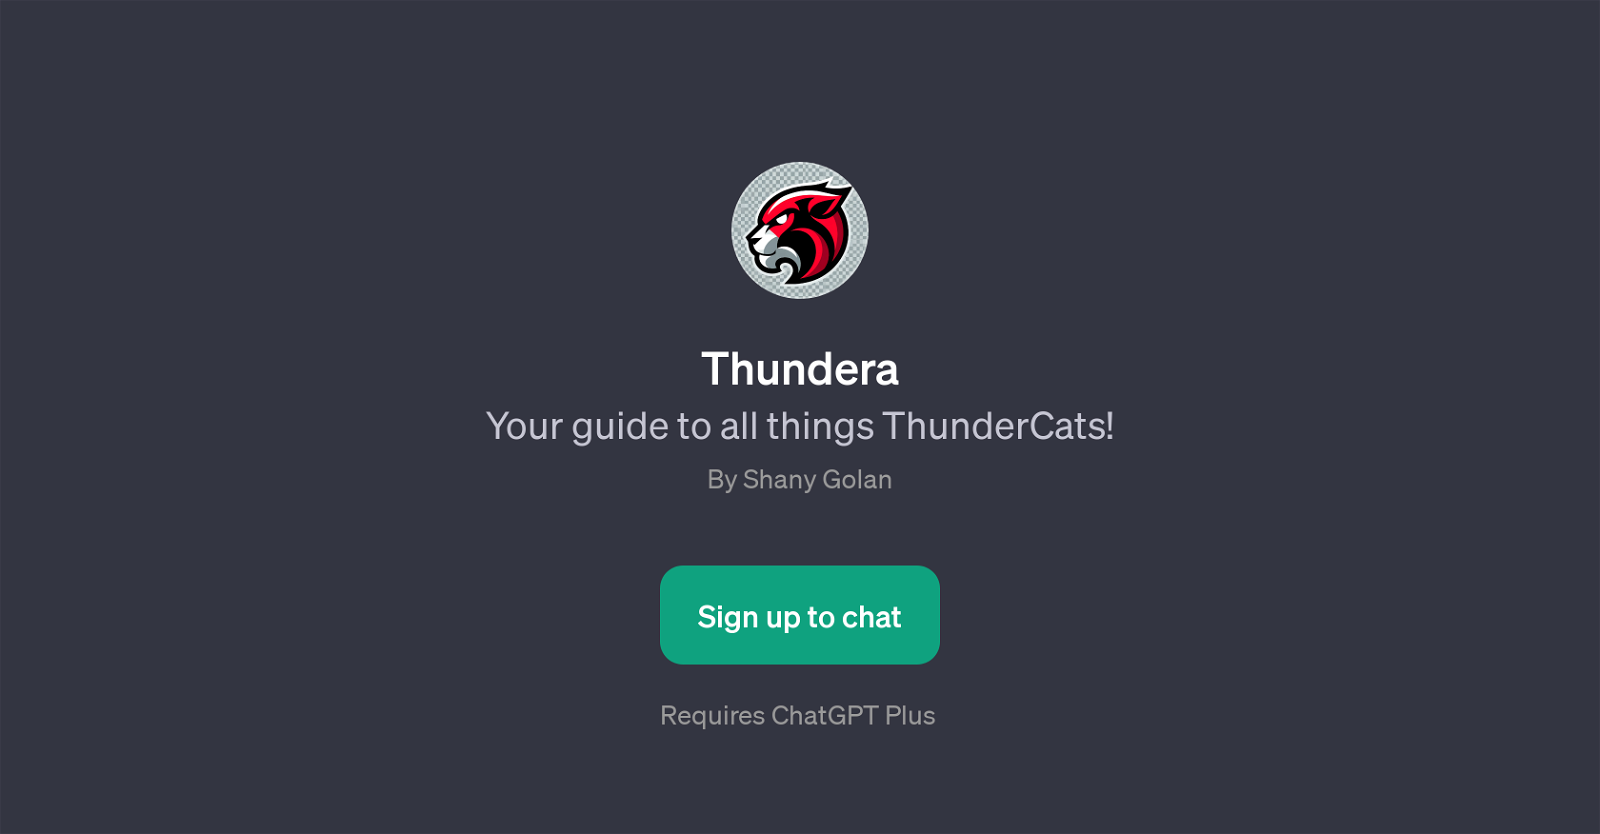 Thundera website